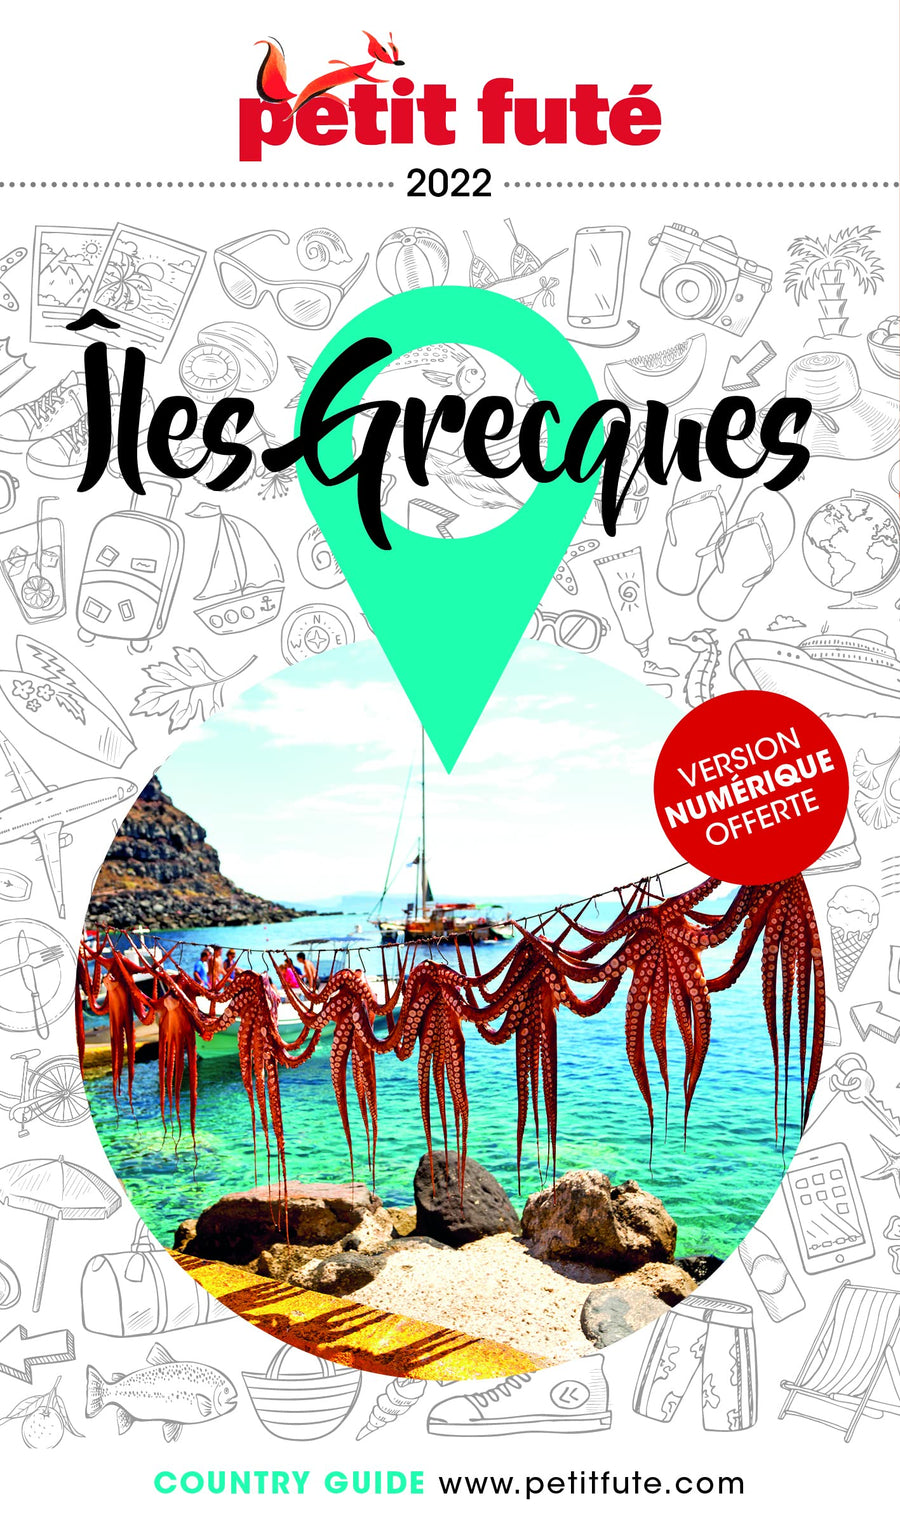 Guide de voyage - Iles Grecques 2022 | Petit Futé guide de voyage Petit Futé 